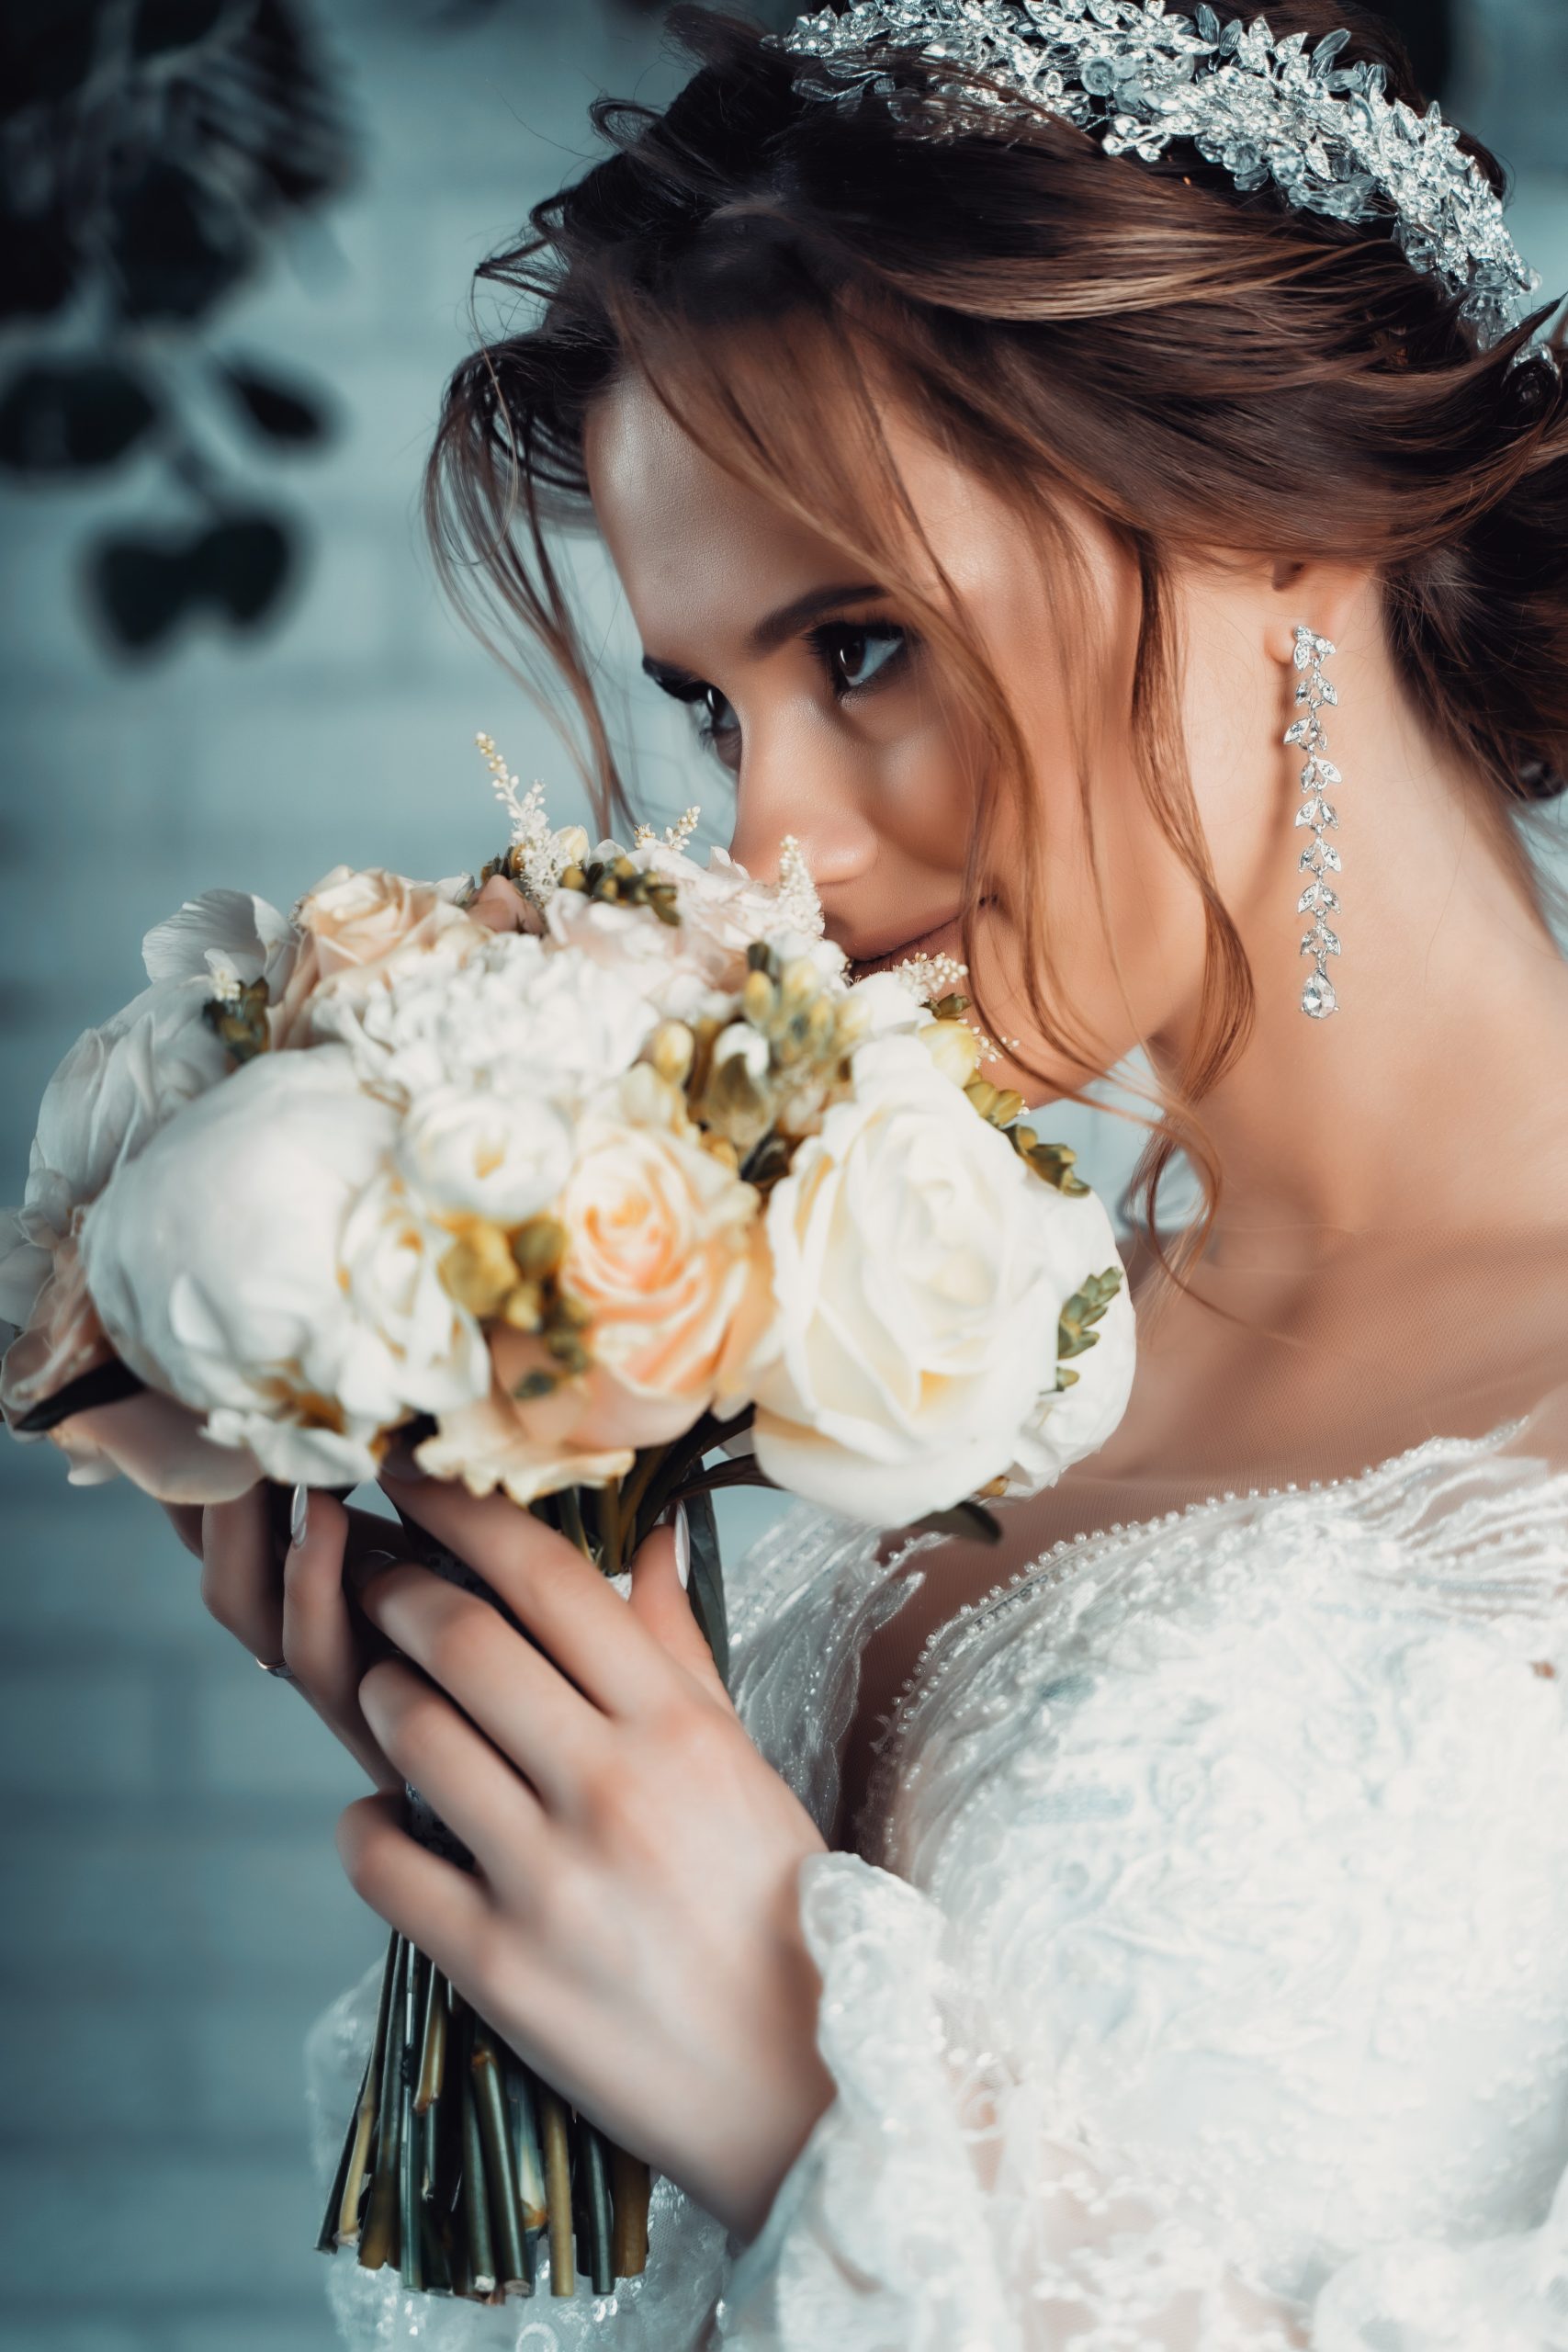 Cómo elegir los pendientes de novia adecuados para el día de tu boda